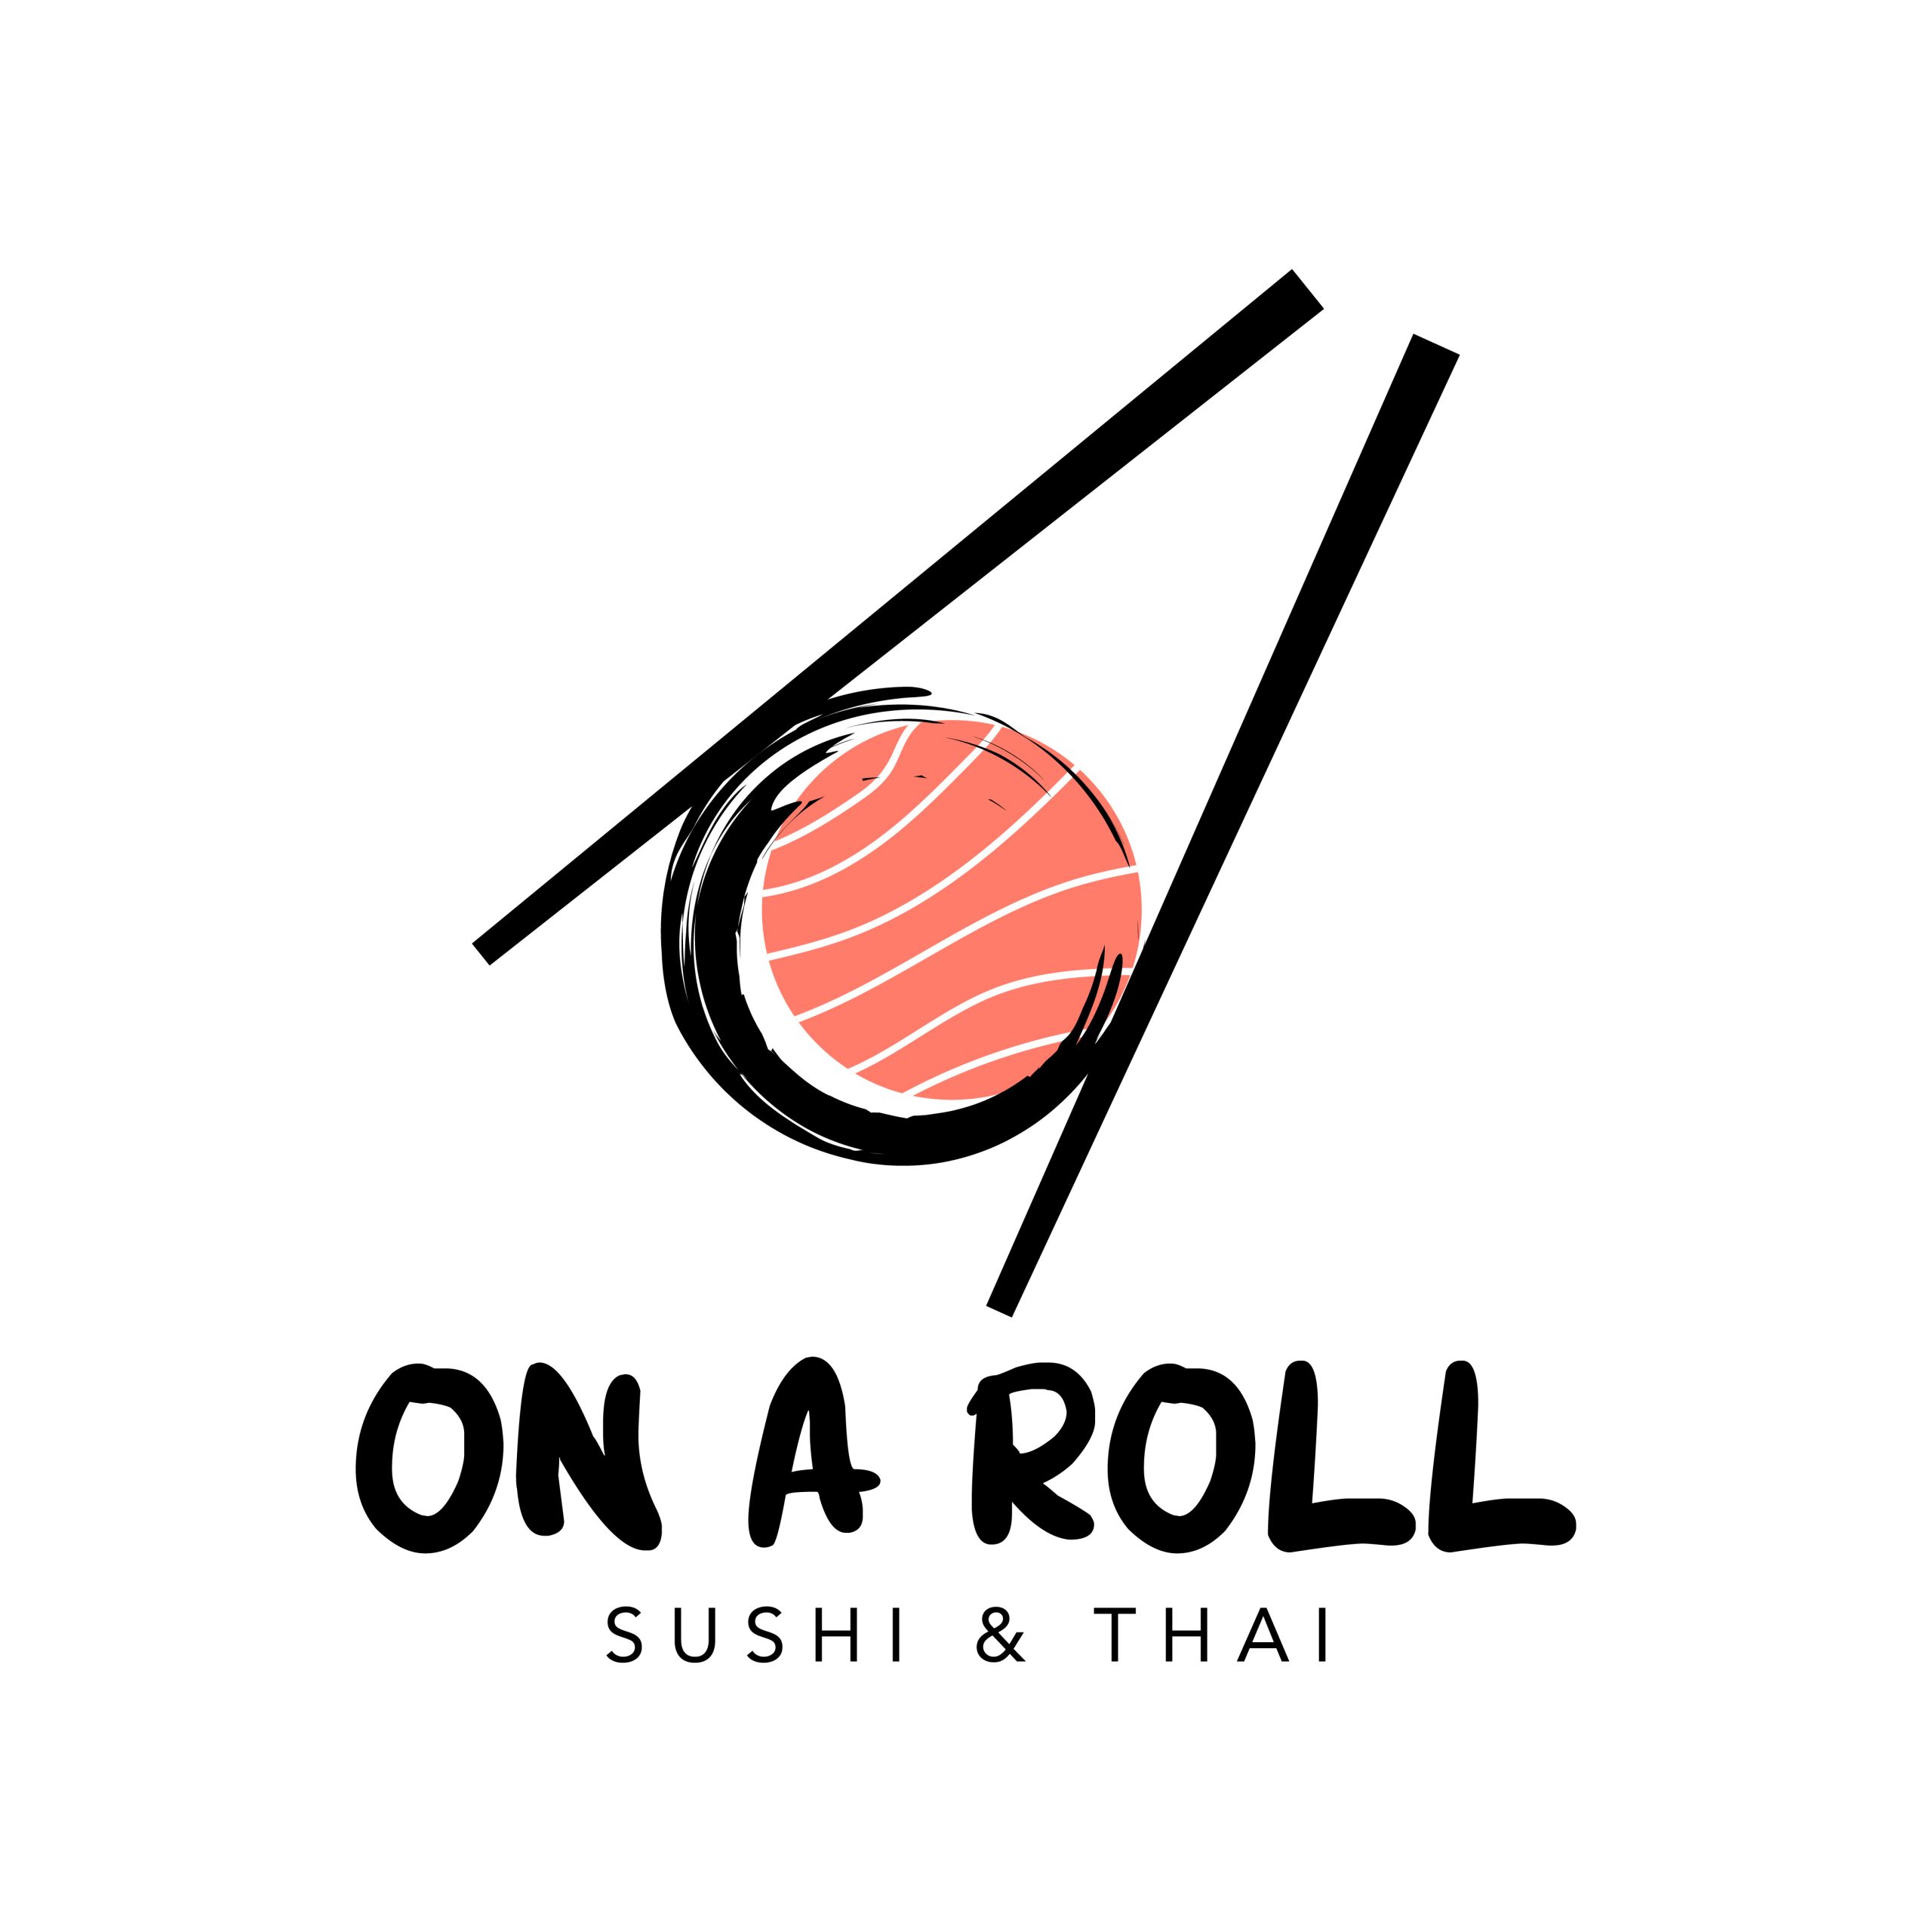 ONAROLL Sushi